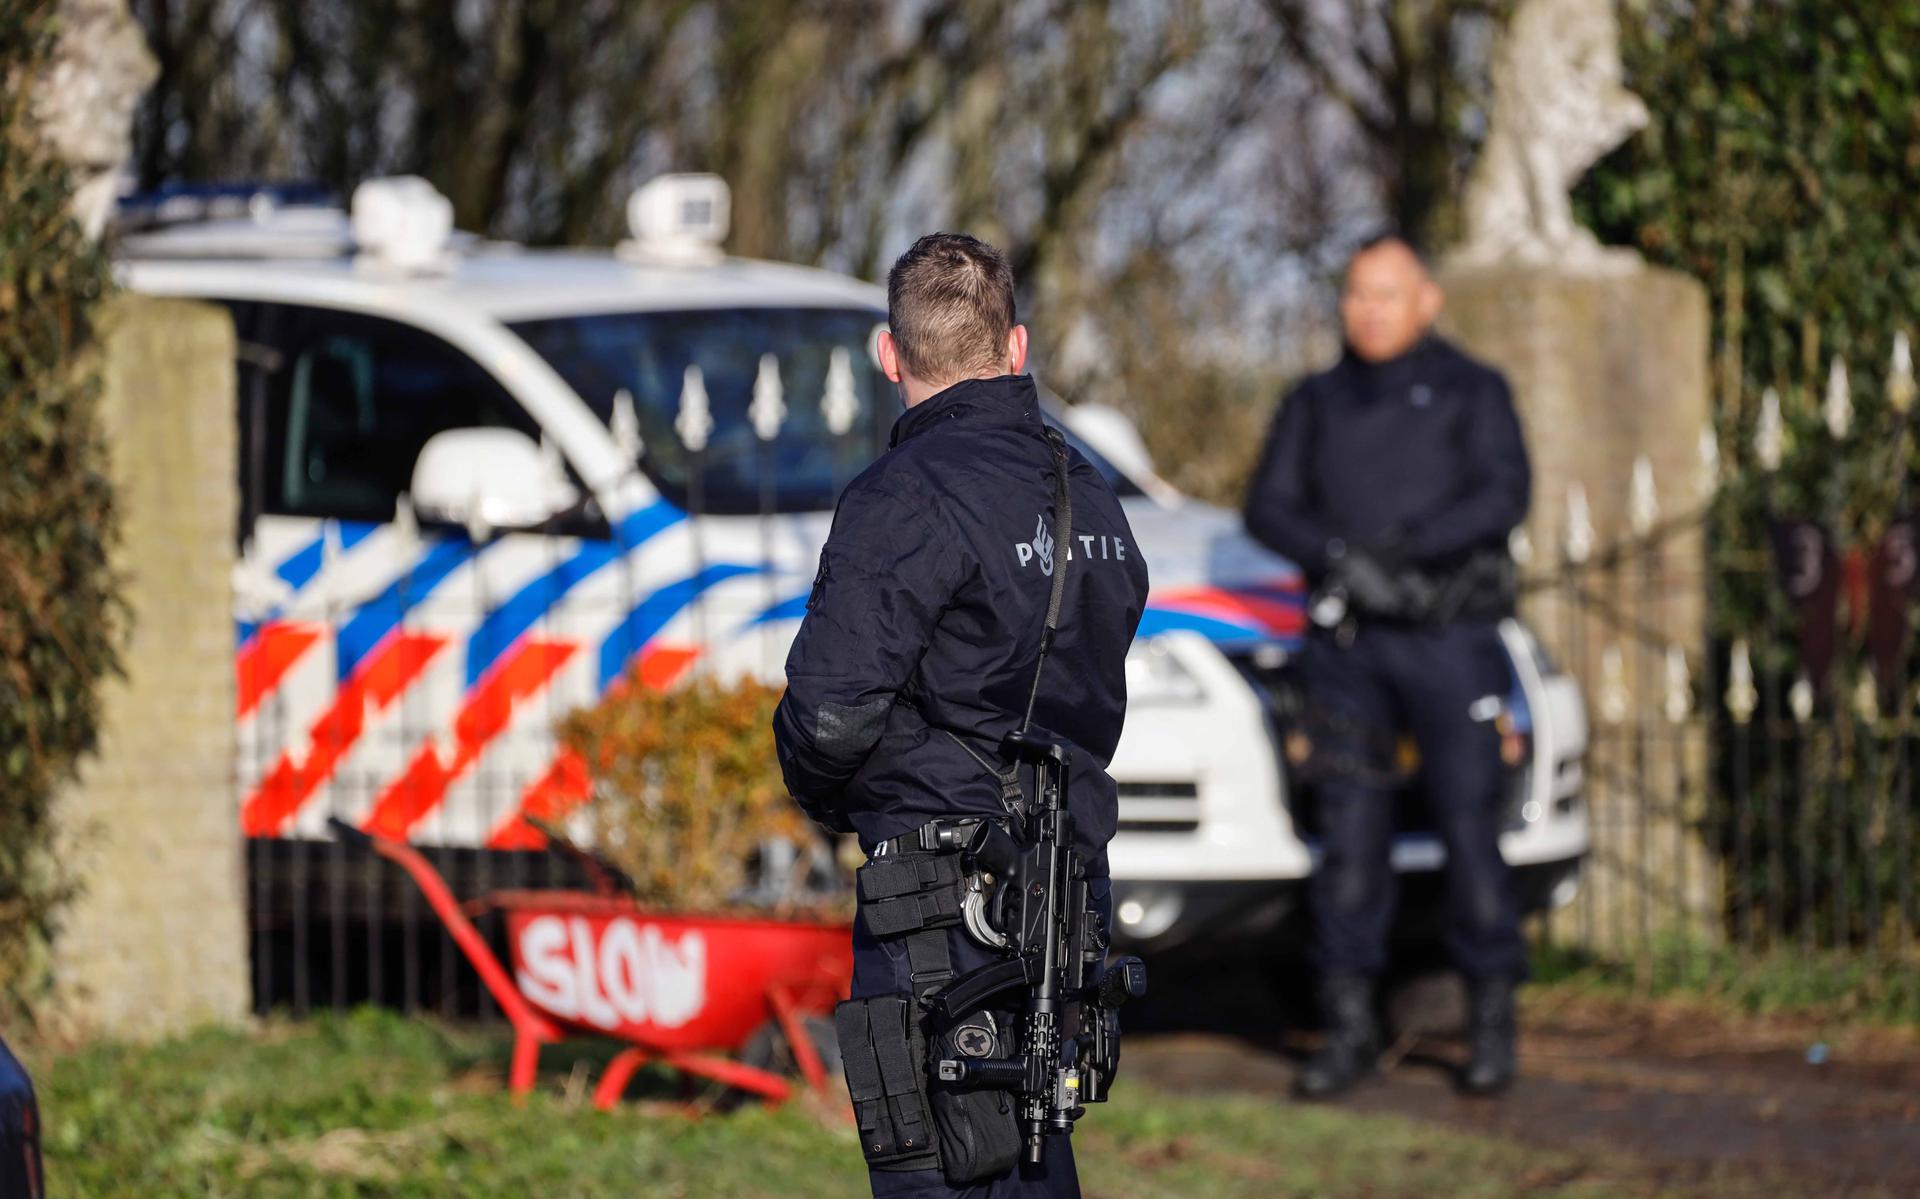 De politie heeft vrijdagochtend een drugslaboratorium gevonden aan de Lange Dyk in Minnertsga.